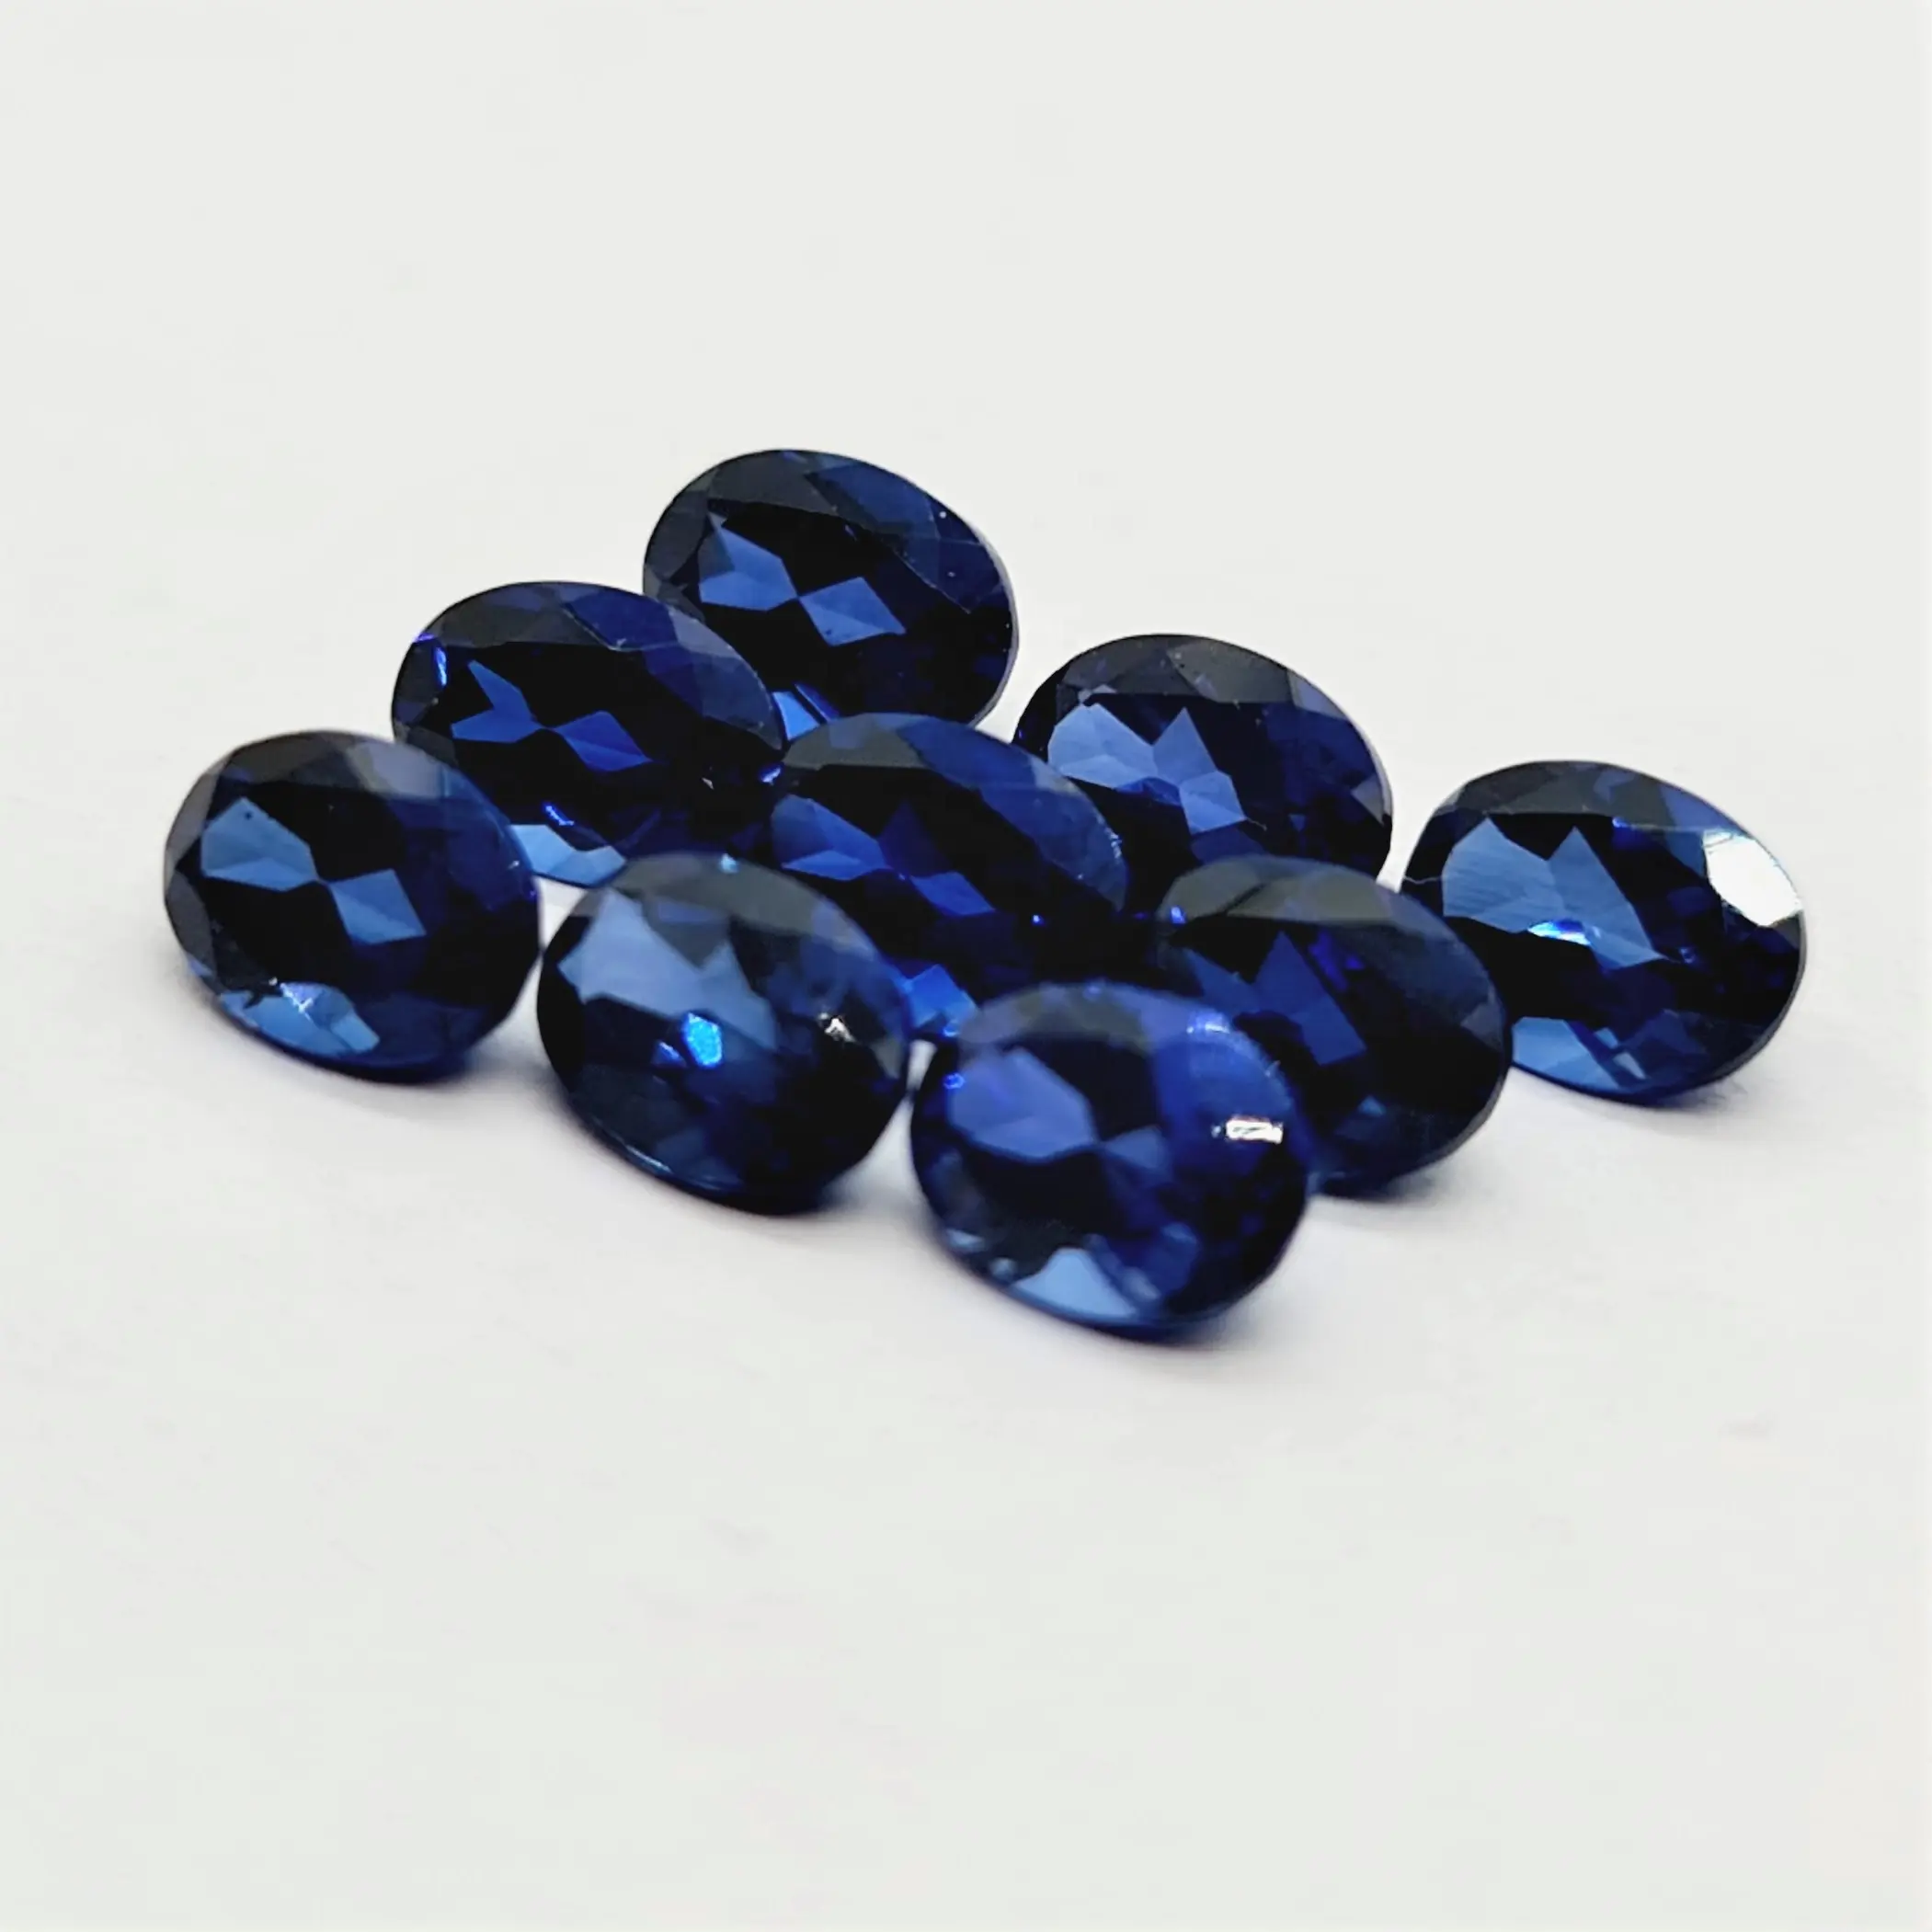 Taglio ovale realizzato In laboratorio con gemme di zaffiro blu taglio ovale dimensioni calibrate e tutte le forme e dimensioni tagliate su ordini personalizzati In Pr all'ingrosso